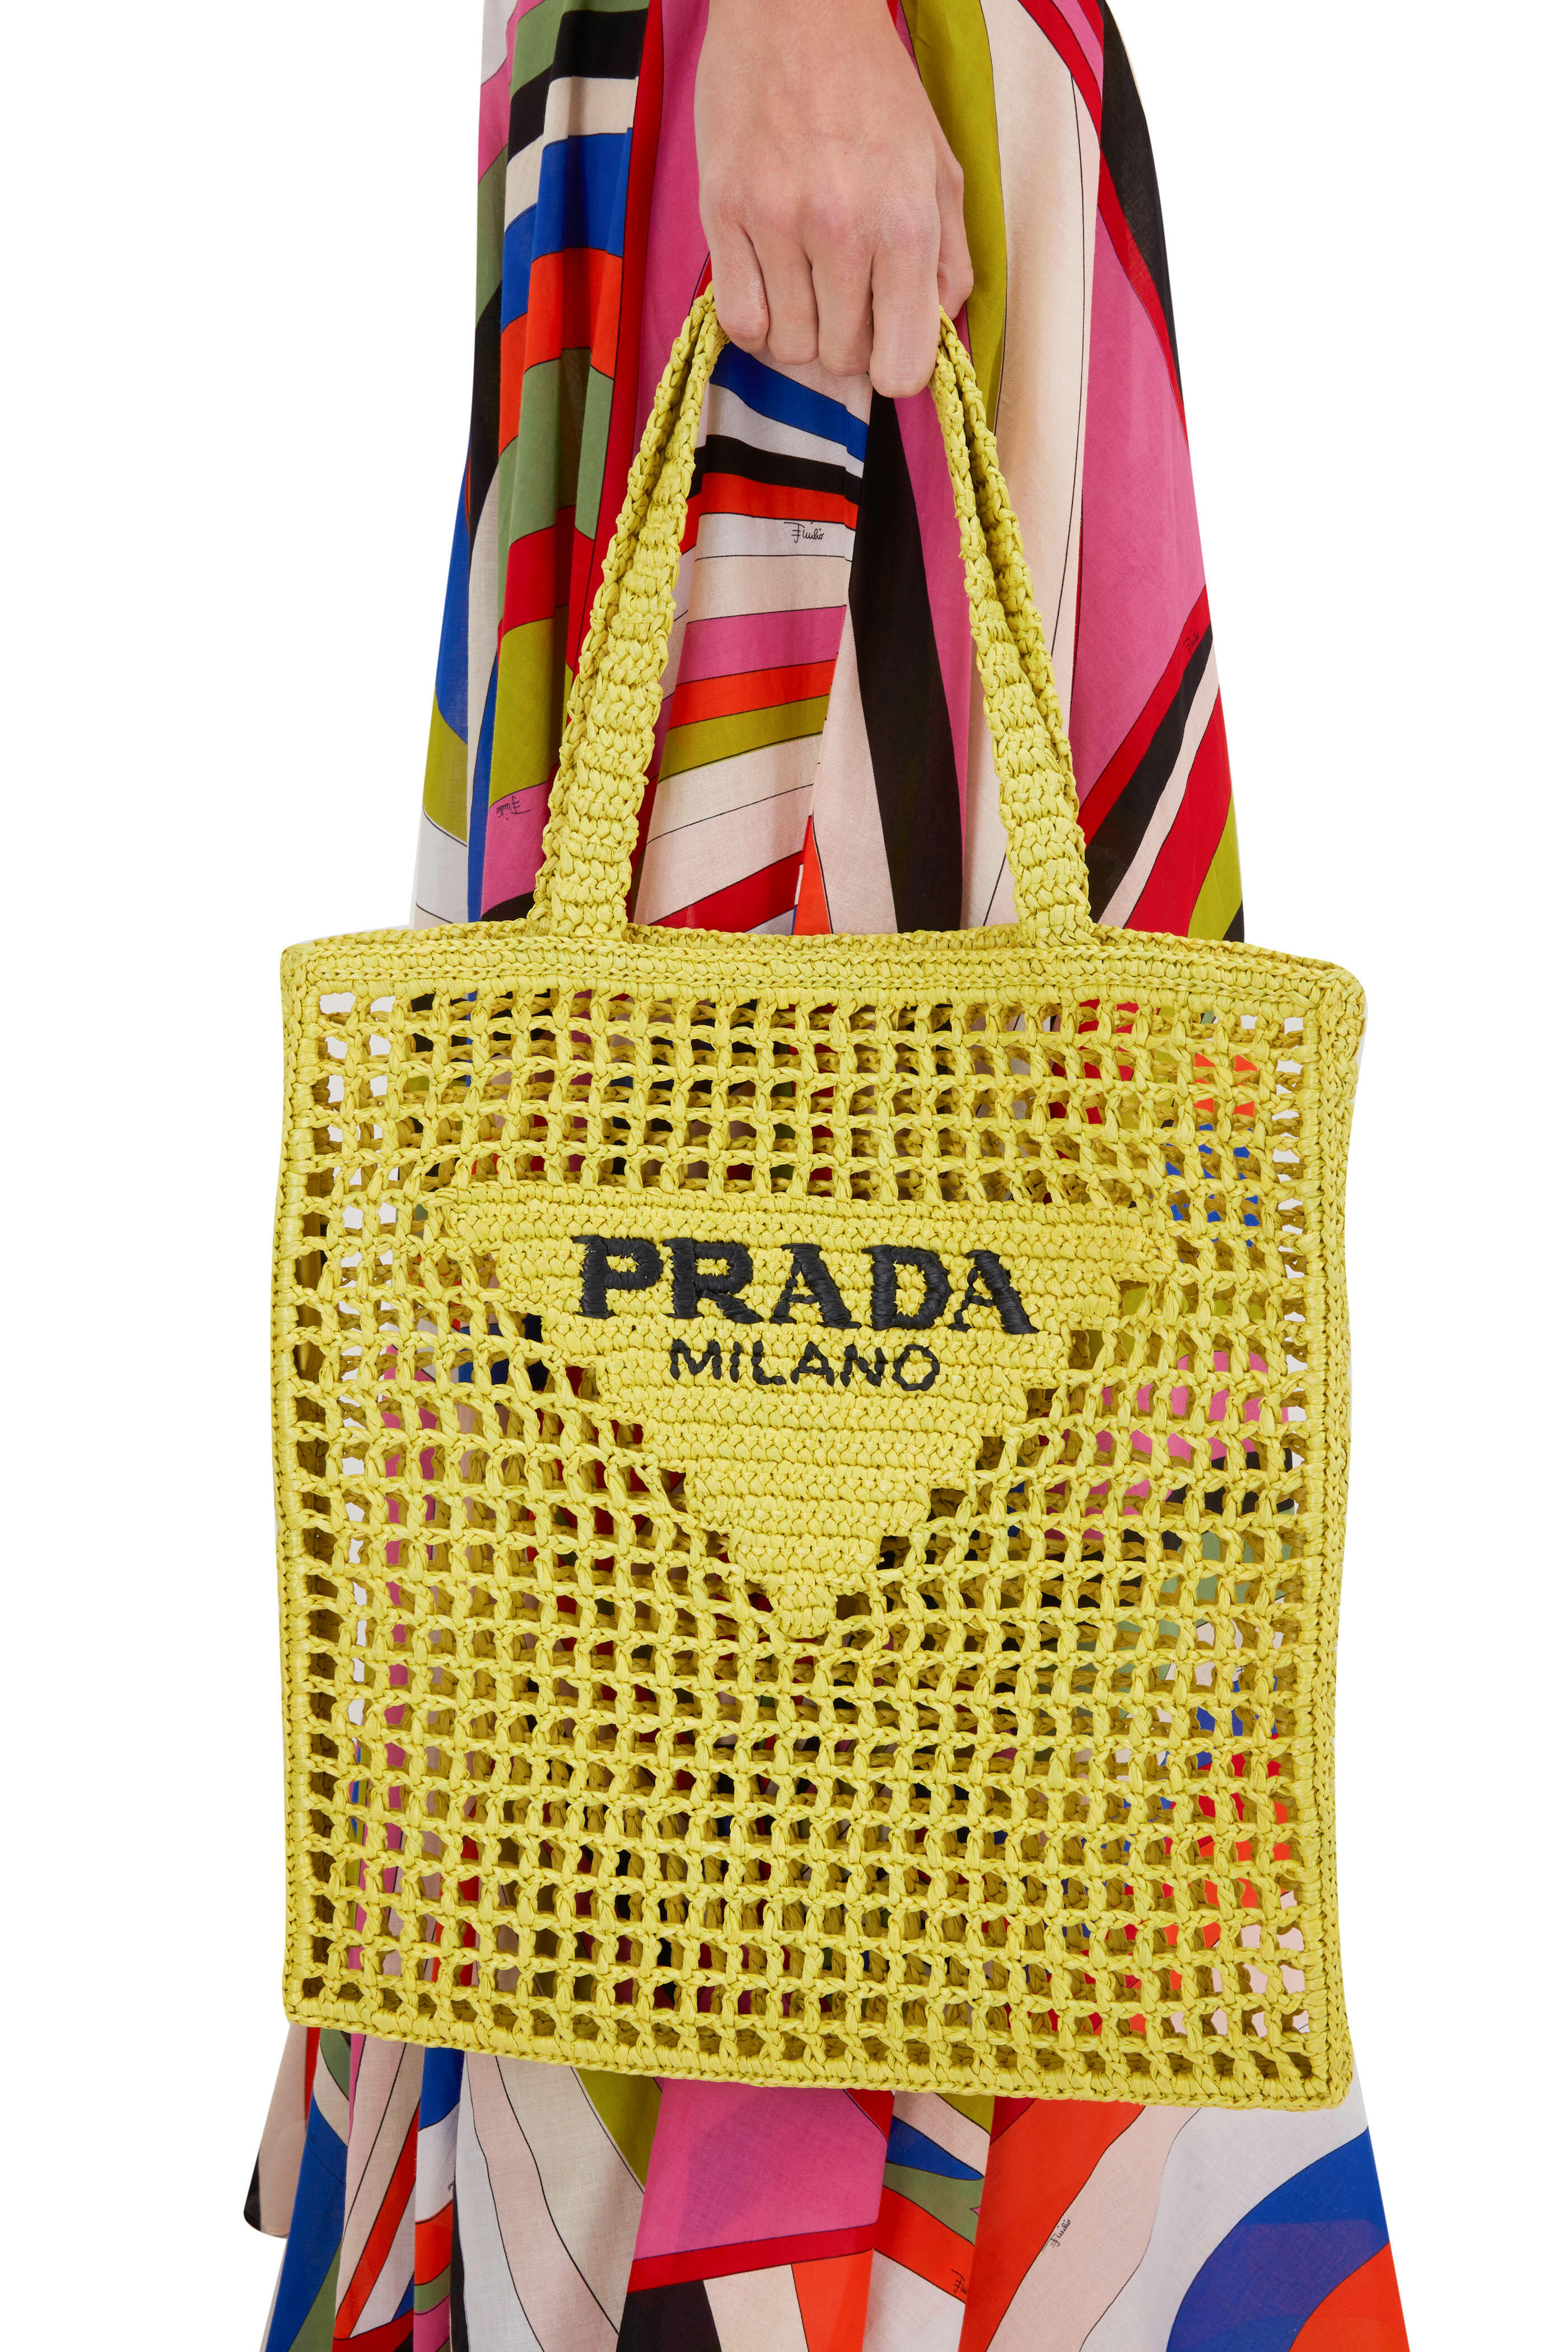 Prada raffia tote bag Milano. Orange, Black, White, Yellow, Tan